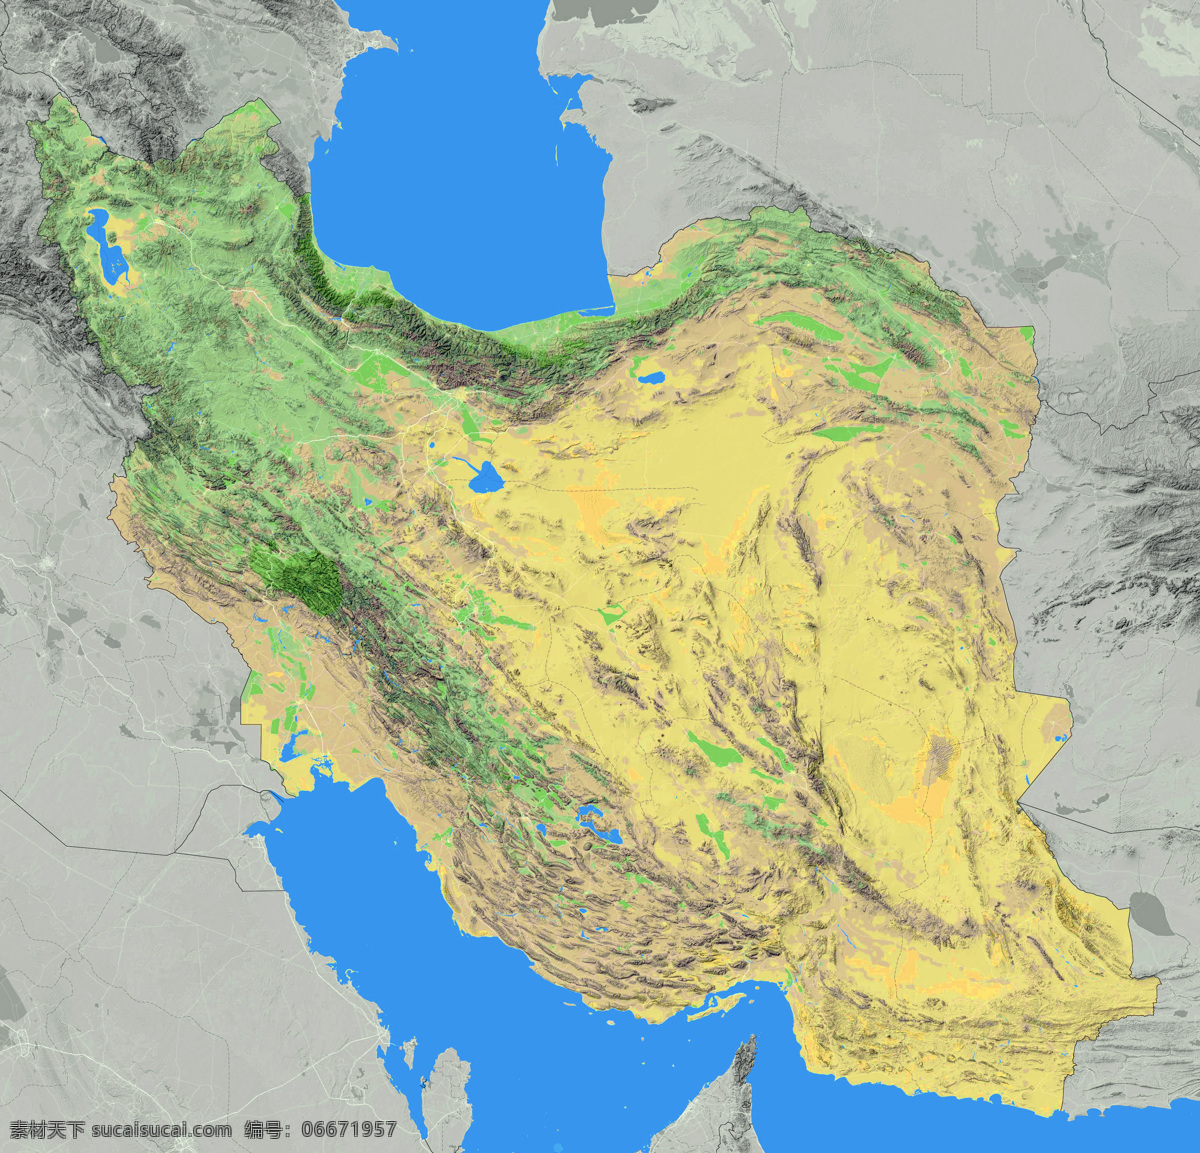 伊朗地形图 地形图 欧洲 上帝之眼 卫星图 俯视图 nasa 地中海 海洋 山地 西西里岛 撒丁岛 阿尔卑斯山 南欧 东欧 地球 自然景观 自然风景